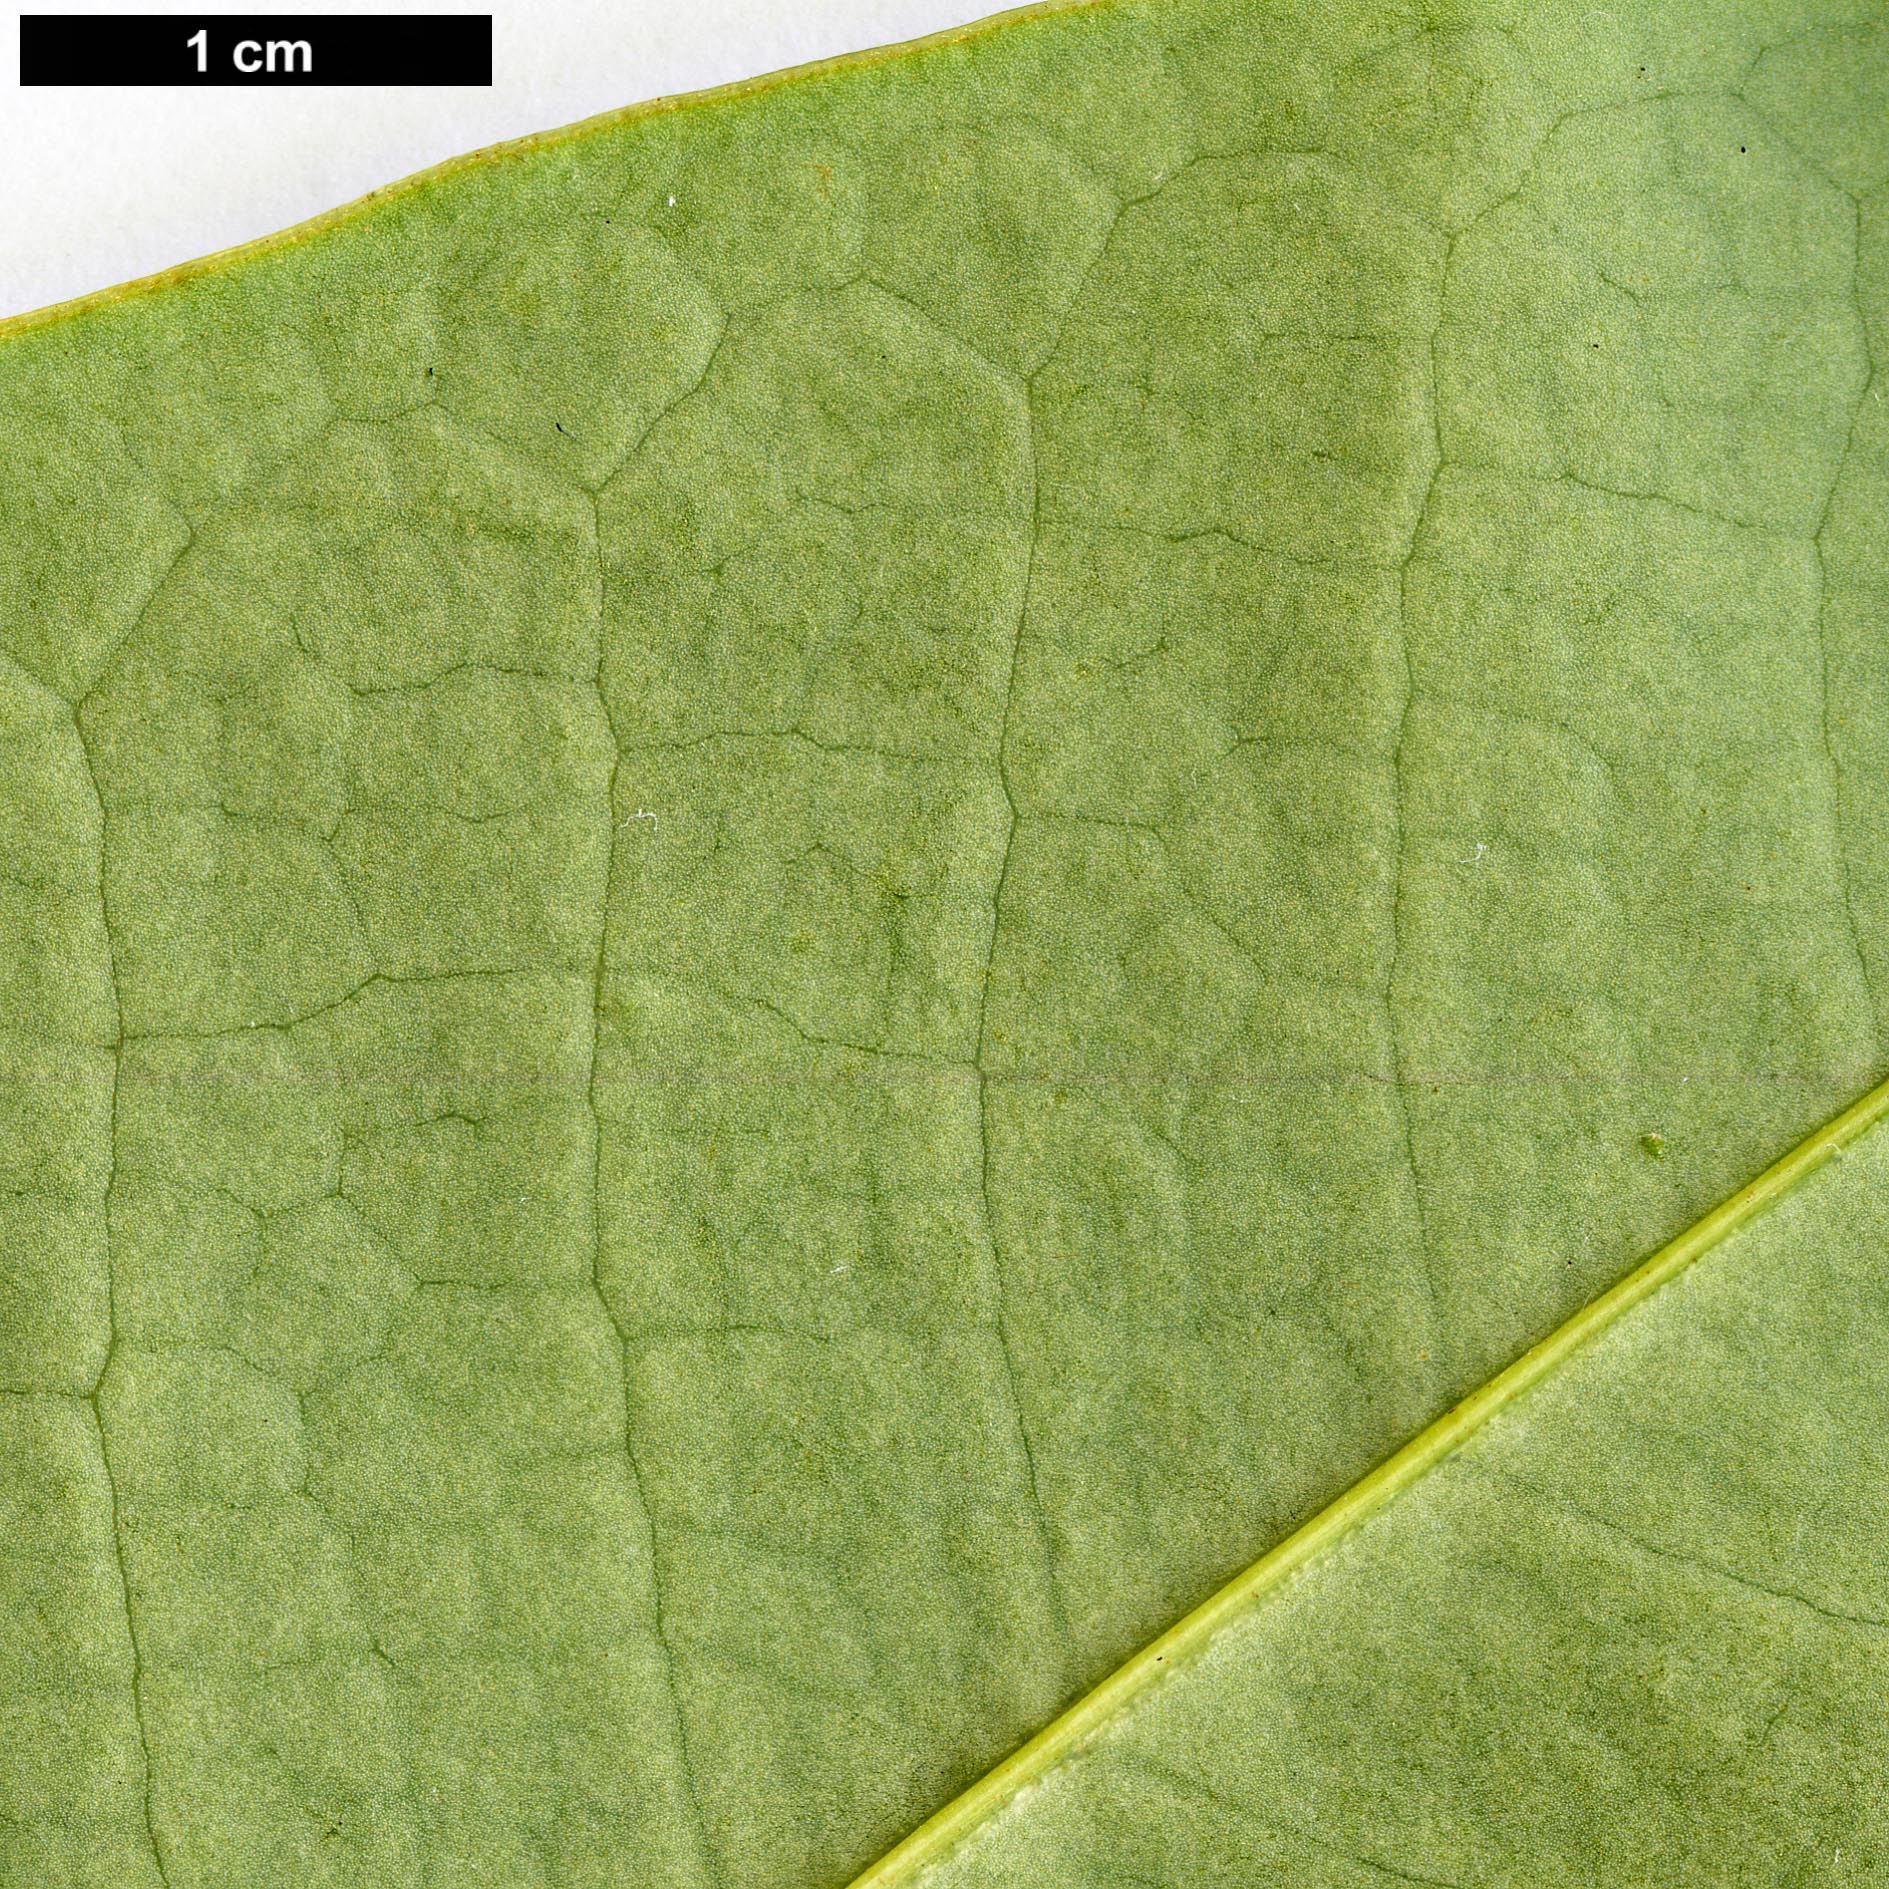 High resolution image: Family: Magnoliaceae - Genus: Magnolia - Taxon: grandis